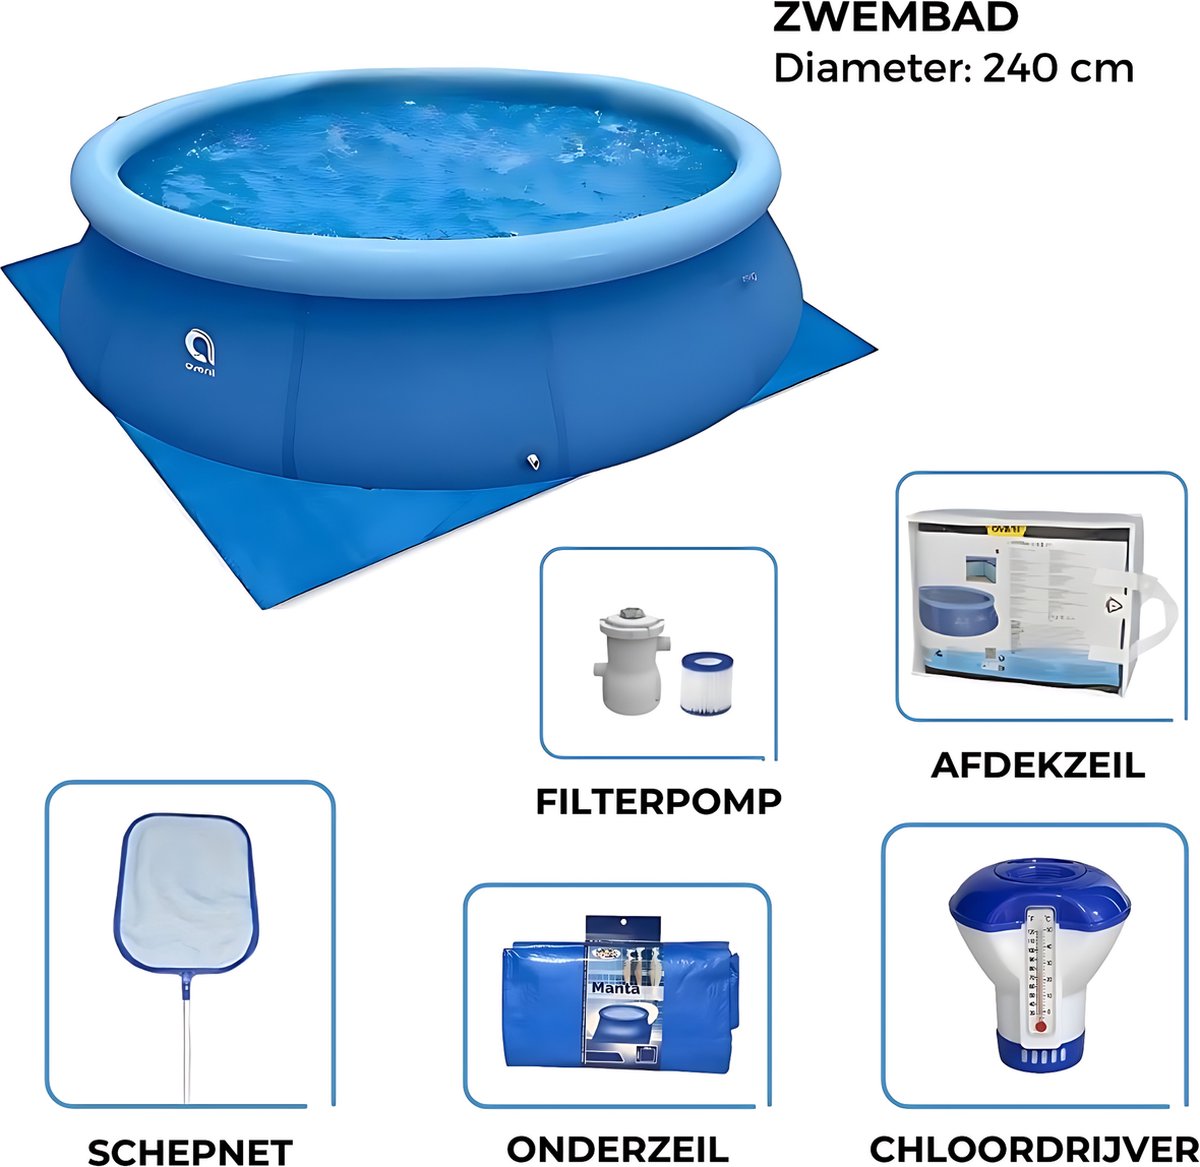 Avenli - Zwembad 240cm met Filterpomp - Afdekzeil - Chloordrijver - Schepnet en Gronddoek - Complete Set